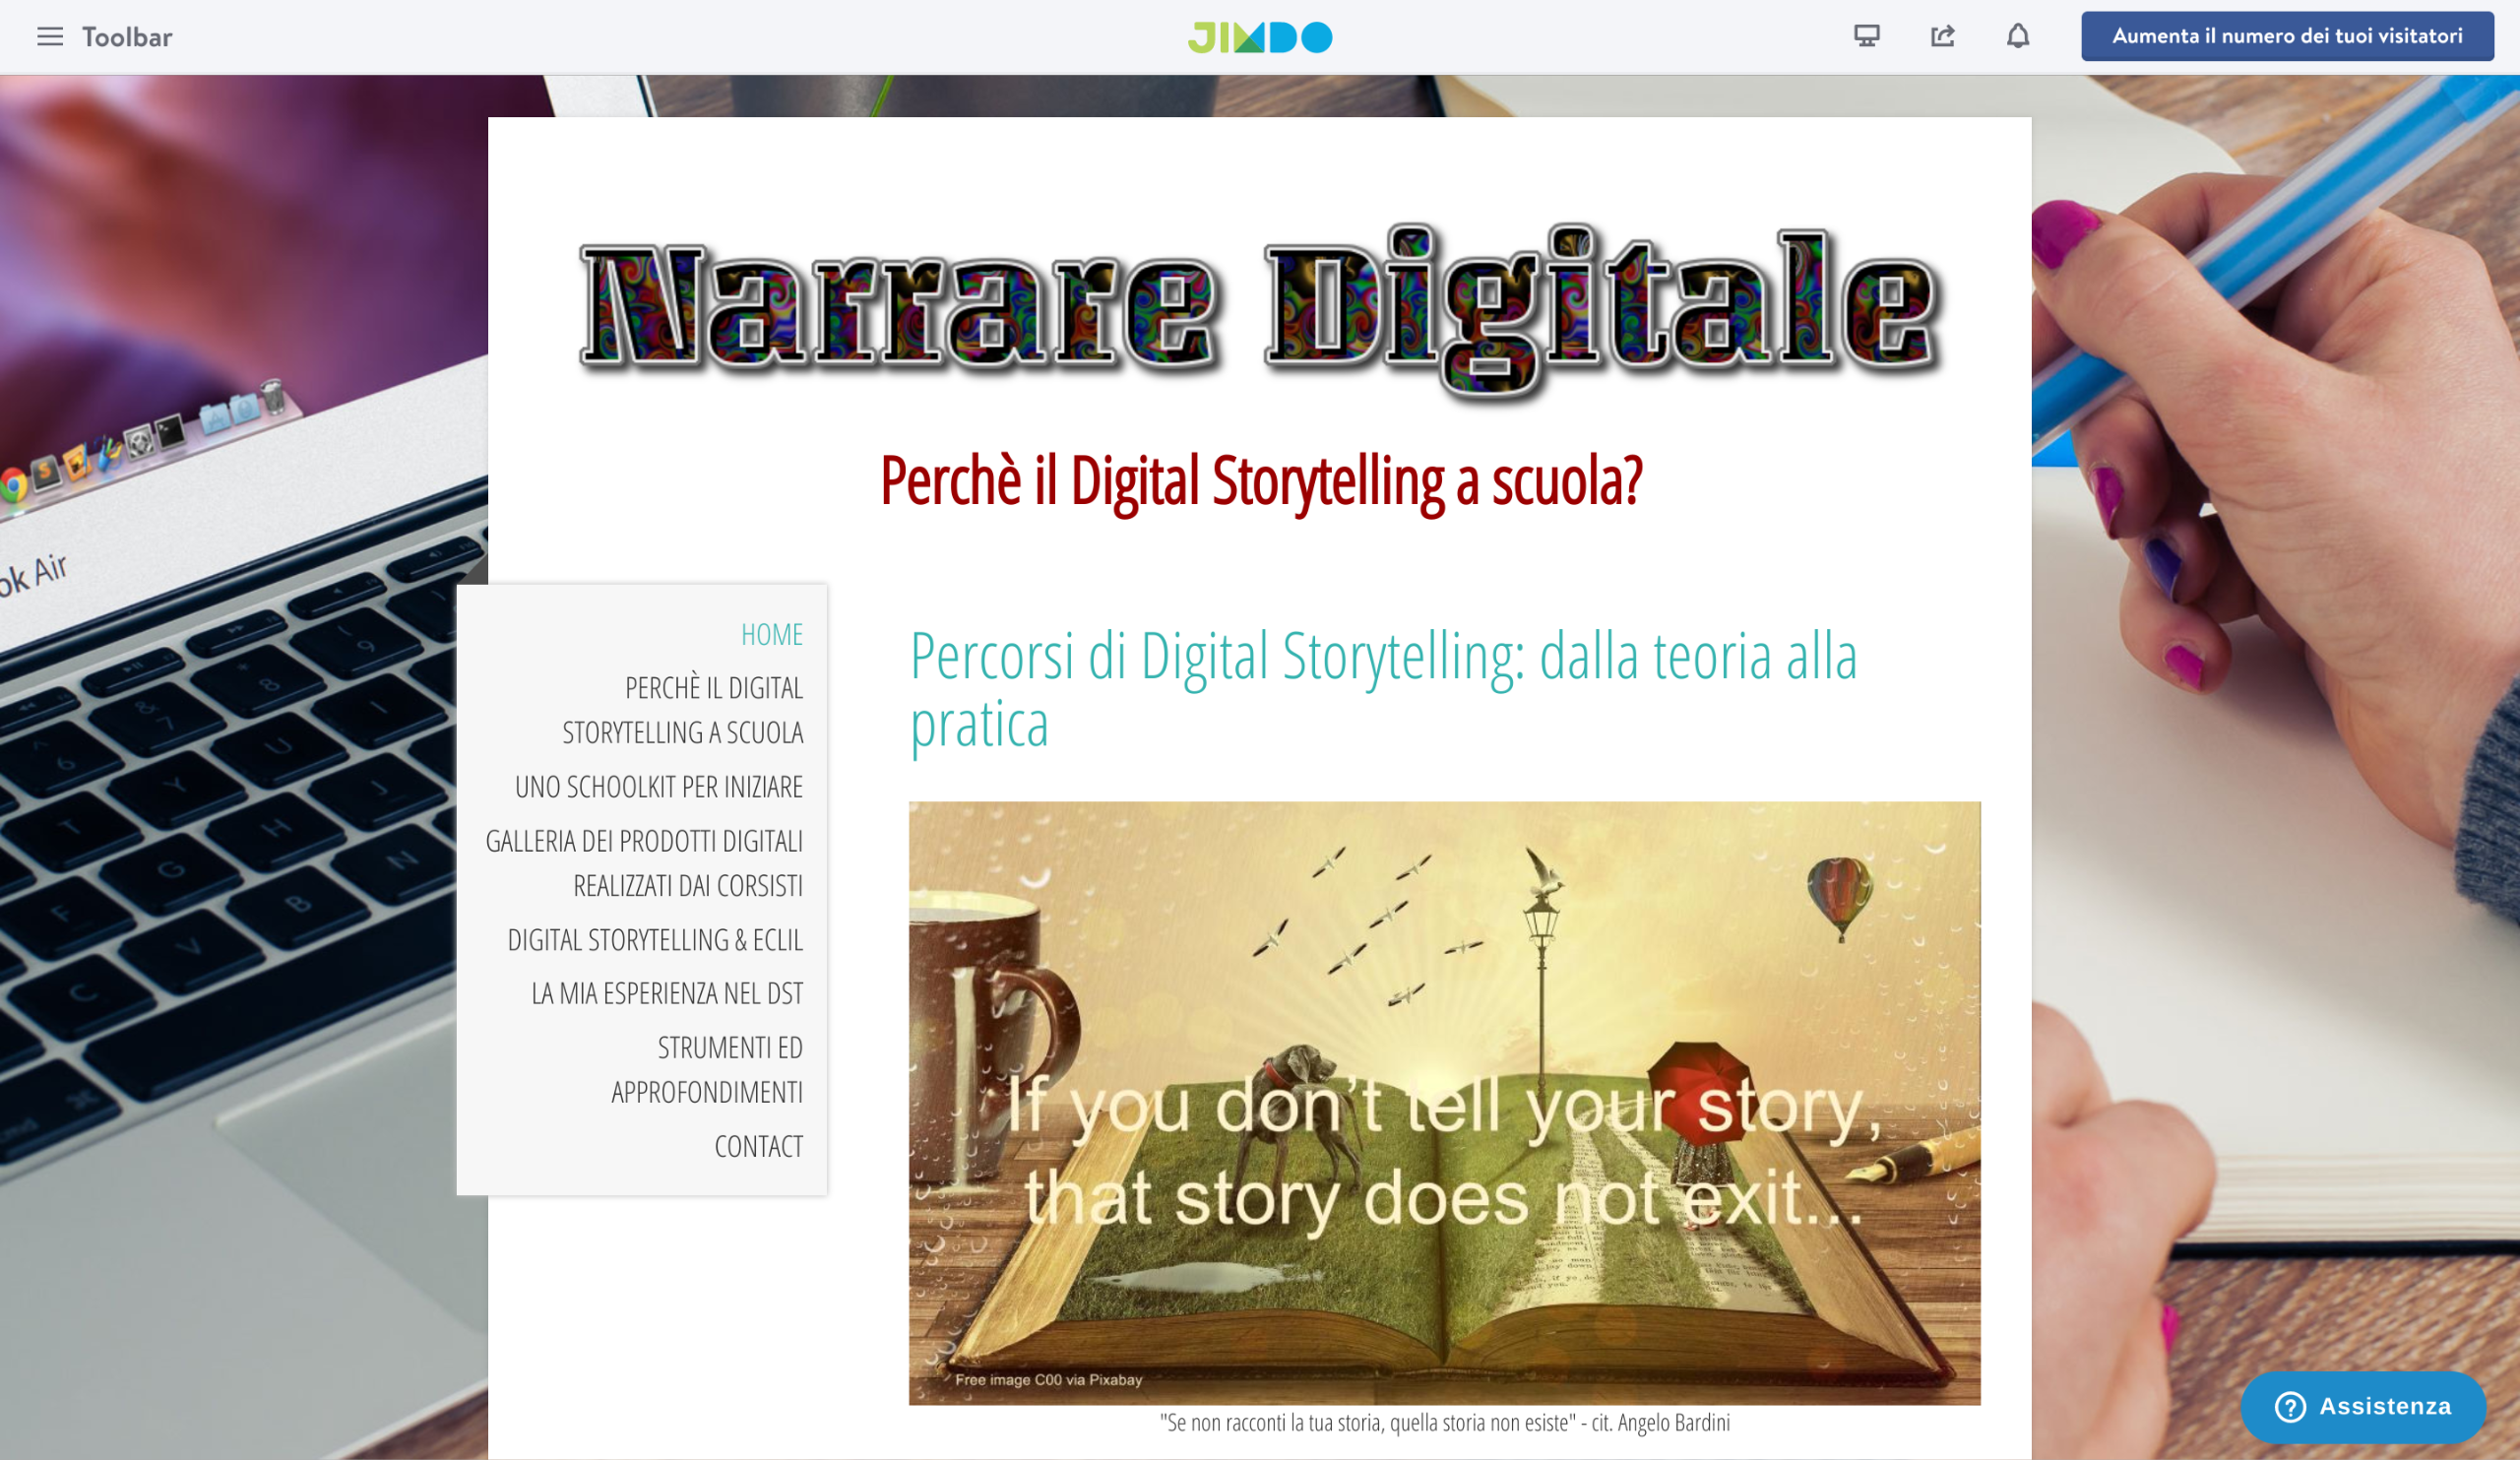 Percorsi di Digital Storytelling dalla teoria alla pratica La narrazione digitale pu³ ampliare gli scenari di apprendimento poiché consente ai ragazzi